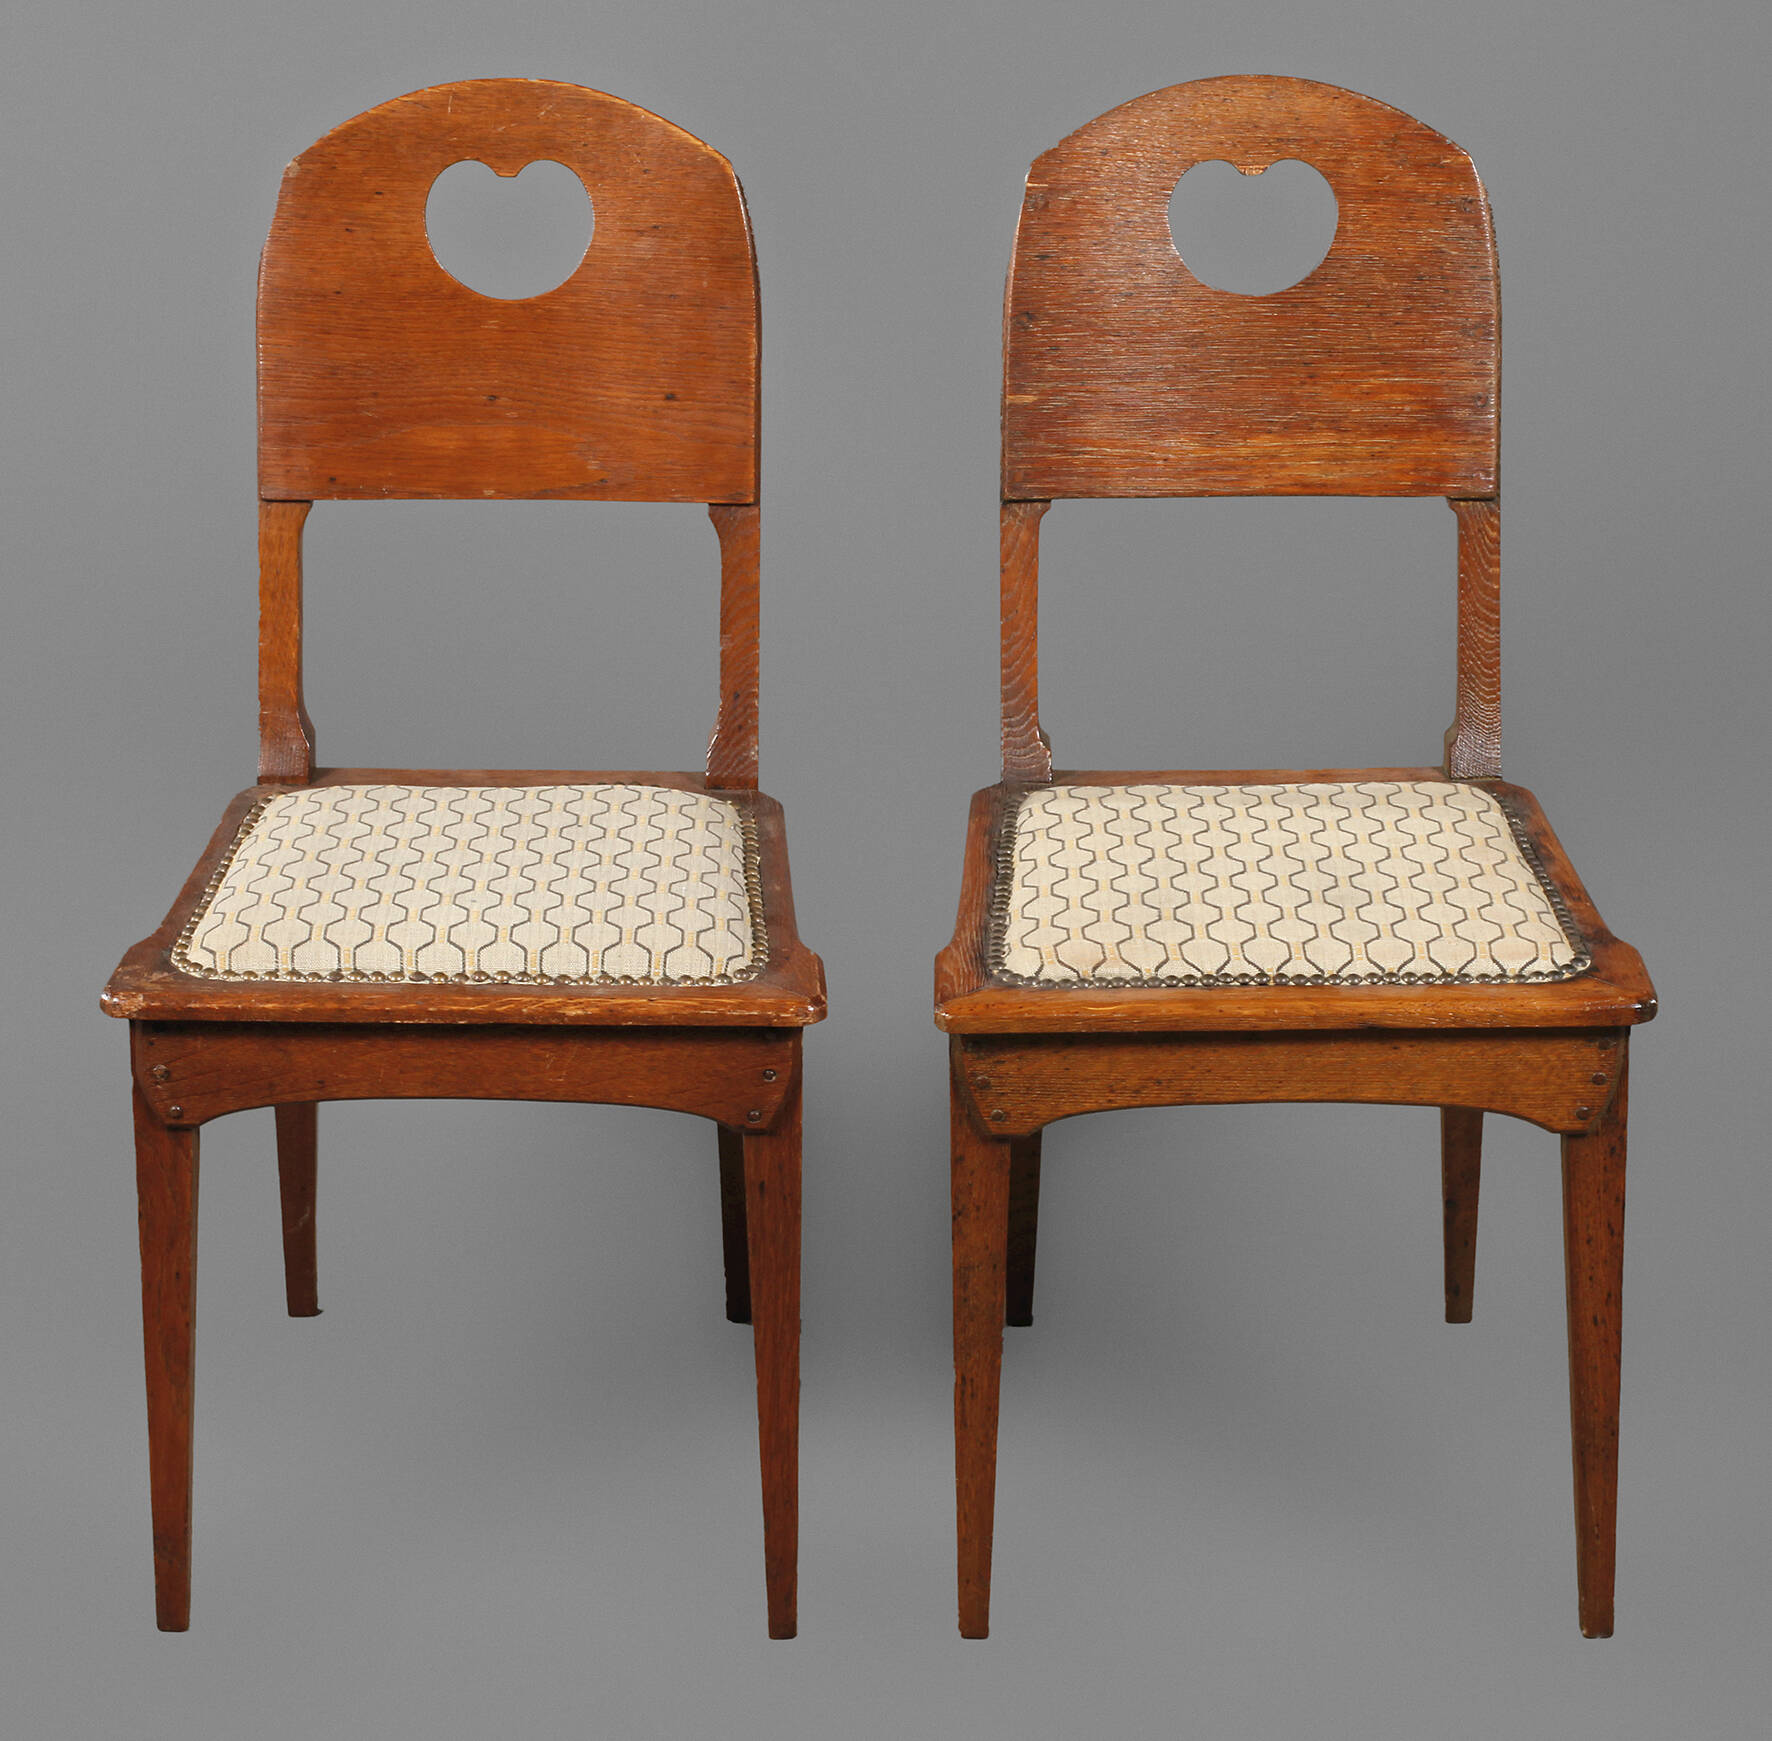 Zwei Stühle Richard Riemerschmid